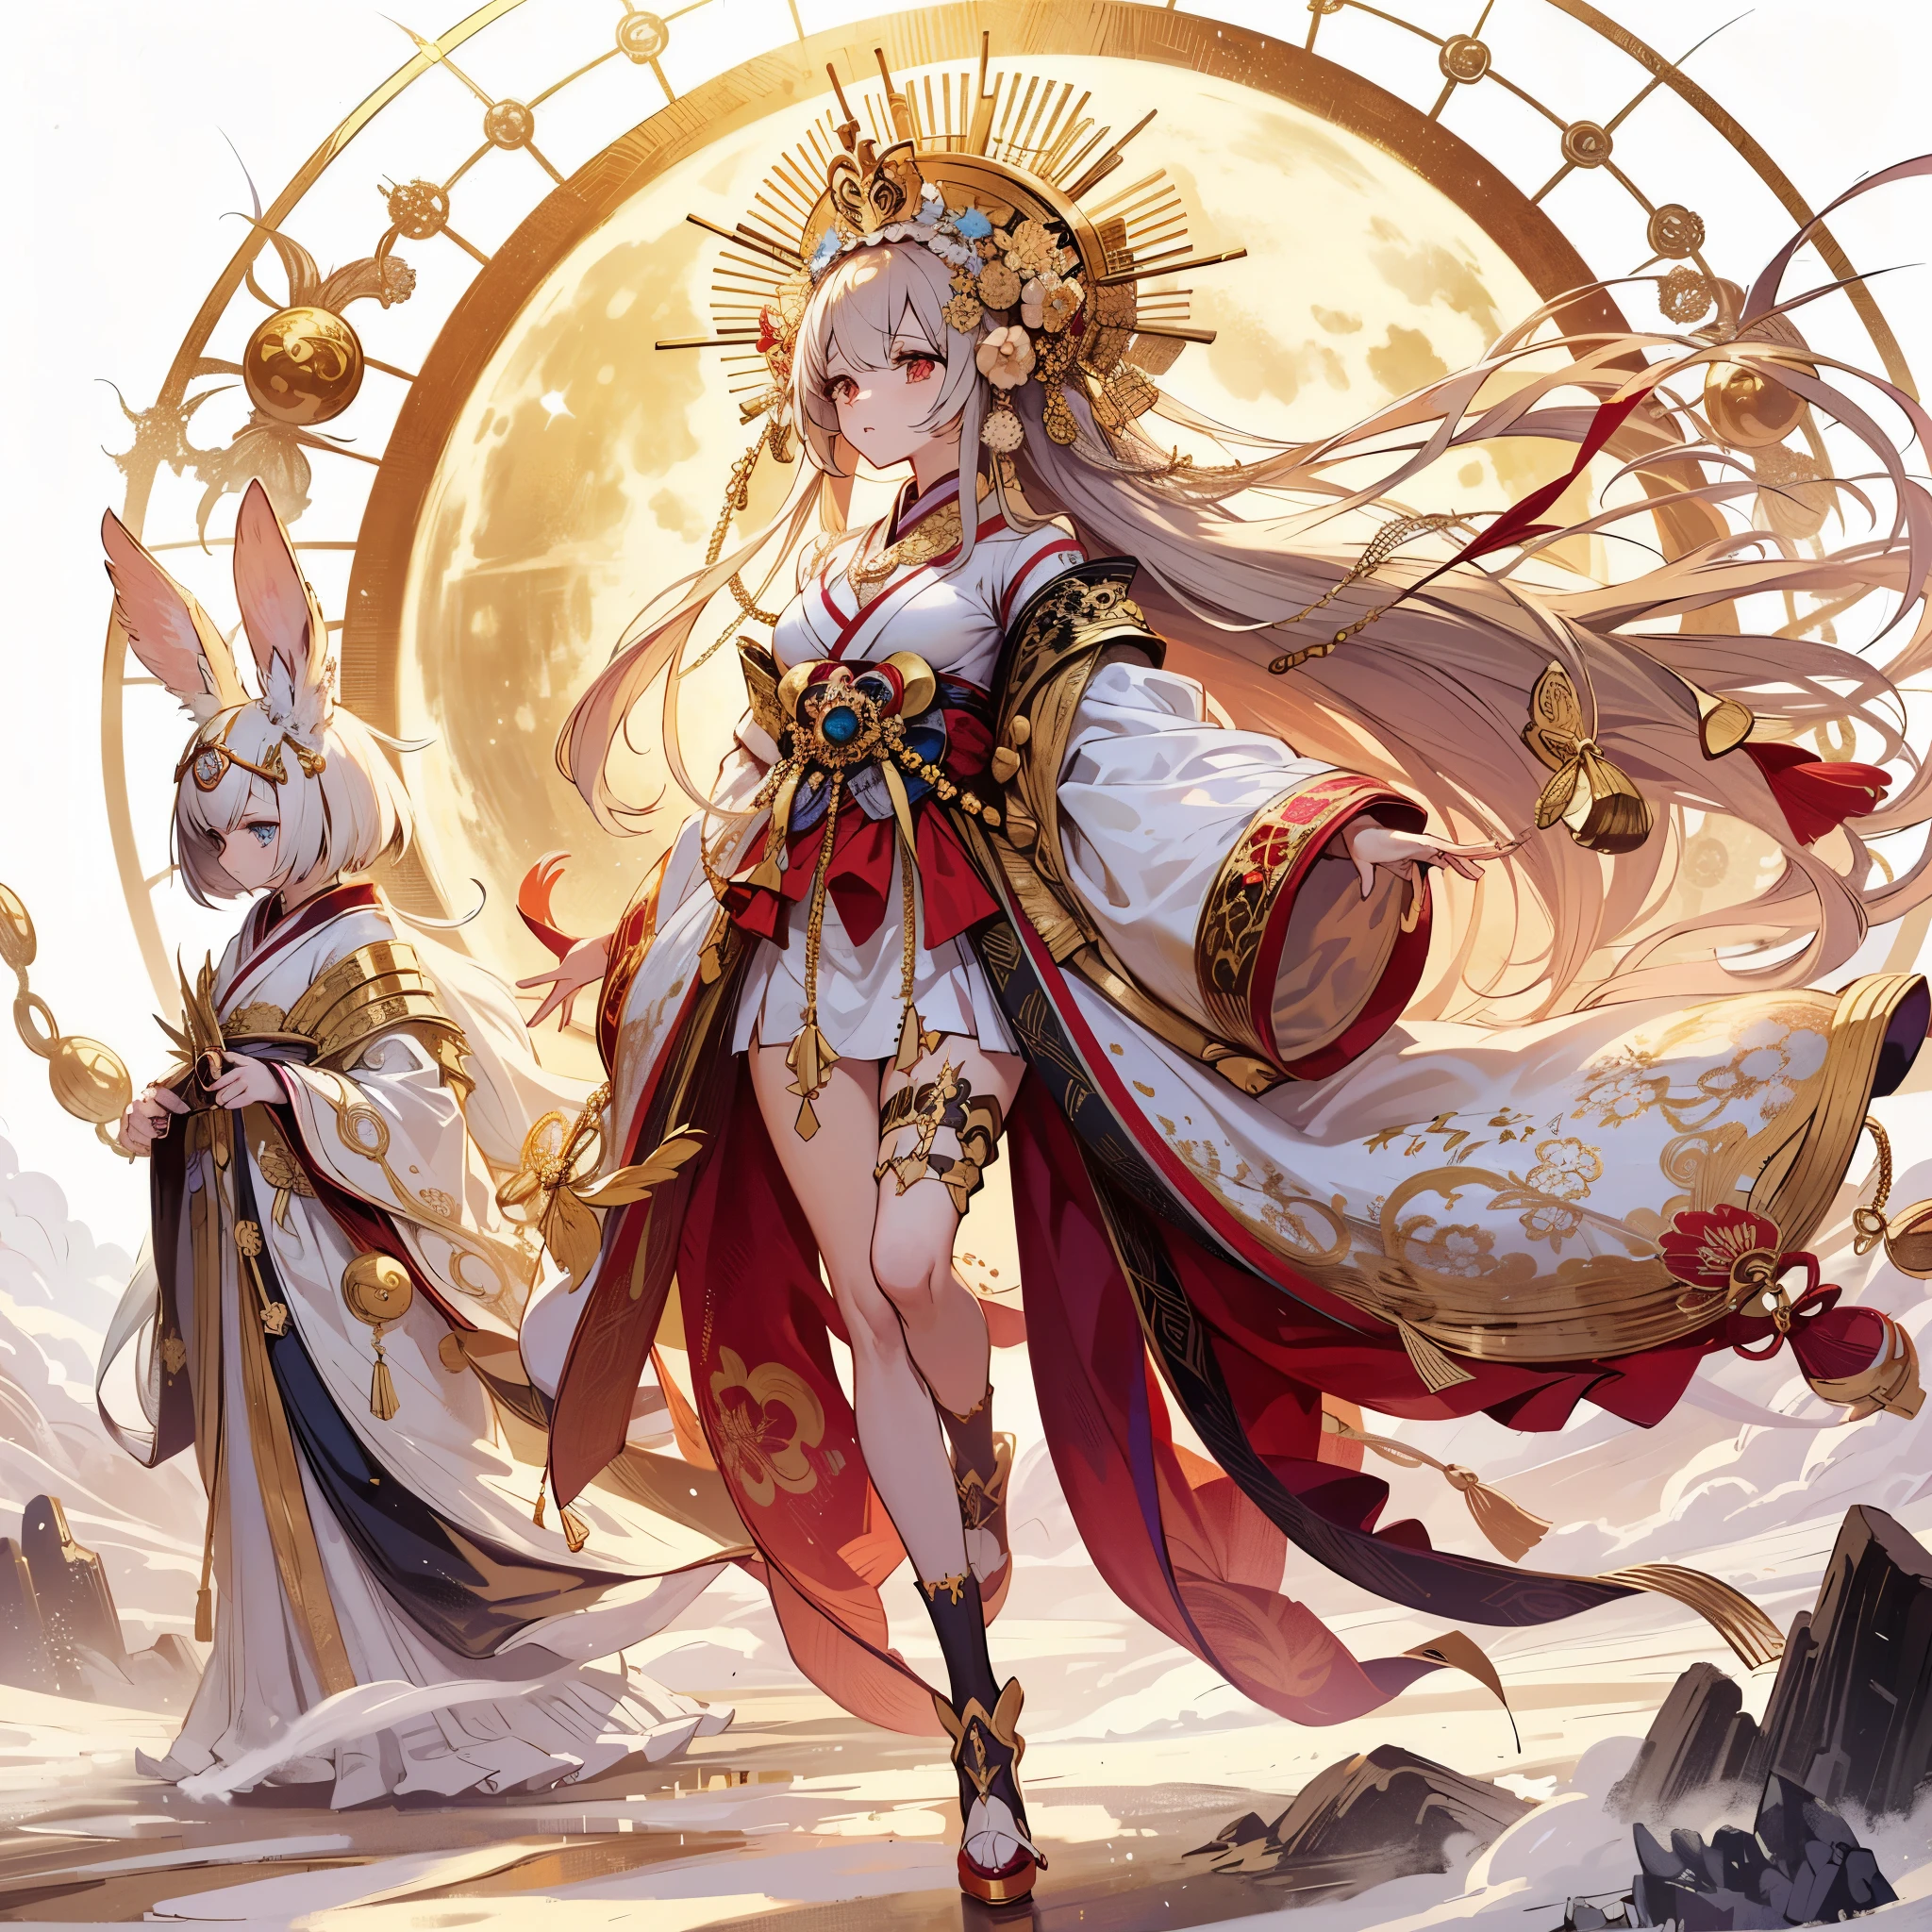 (傑作, 最高品質), (完璧なアスリートボディ:1.2), (詳細な髪), 超詳細, アニメスタイル, 一人で, 全身, Moon Goddess Tsukuyomi, 神秘的で華やかな金と赤と白の着物, 金の王冠をかぶり、布製のブラインドで顔を覆っている, 背中に金色の輪を背負っている, 彼女は白ウサギの妖精の付き添いをしています, 高めのブーツ, デジタルペインティング, 8K高解像度, 全身, 白色の背景, 立っている荒野
